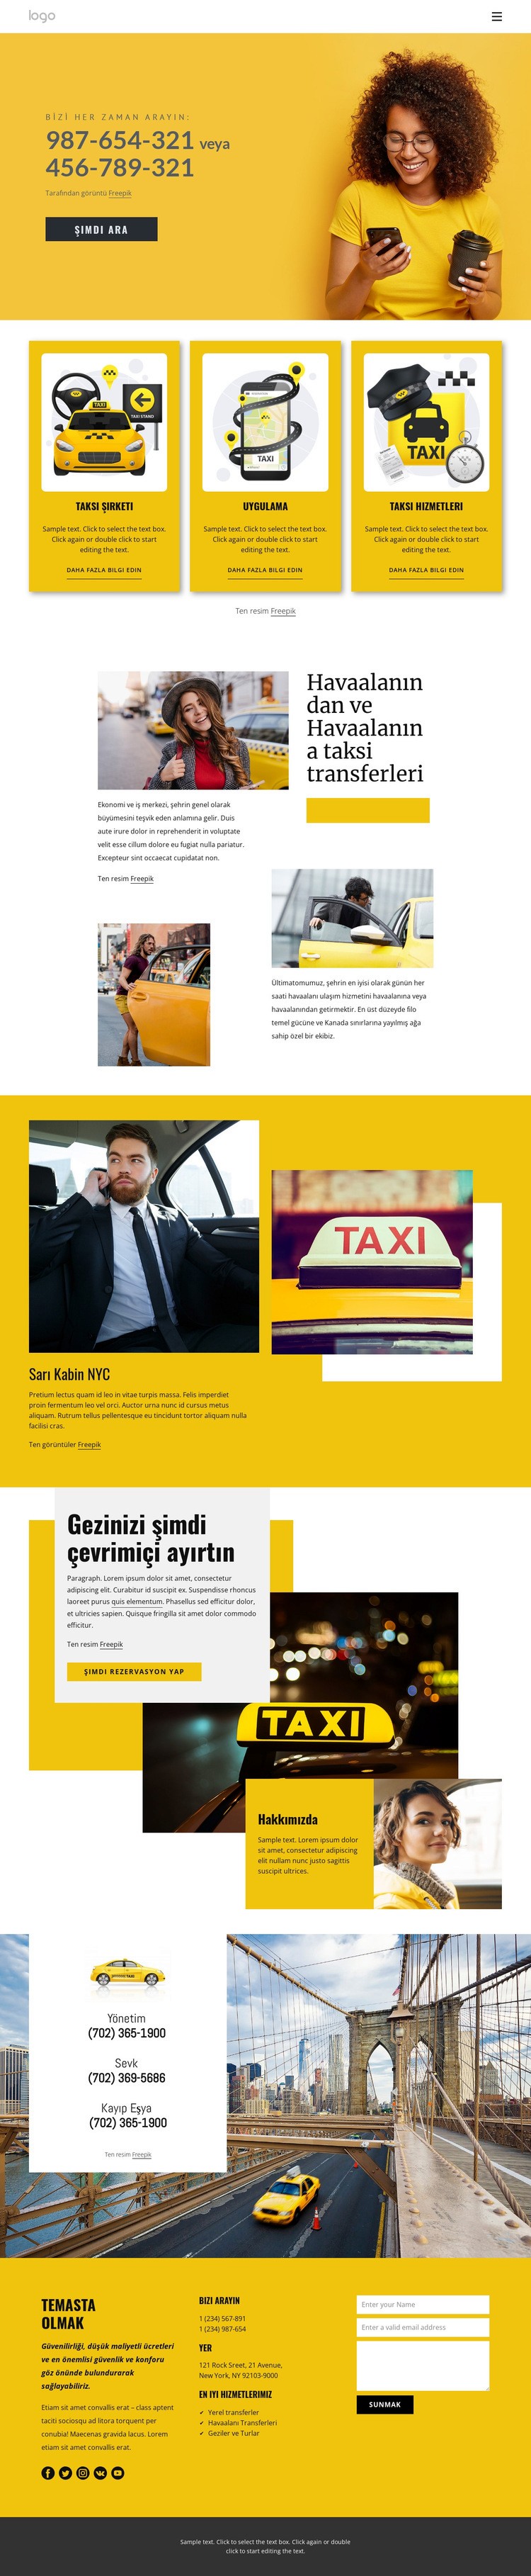 Kaliteli taksi hizmeti Web sitesi tasarımı